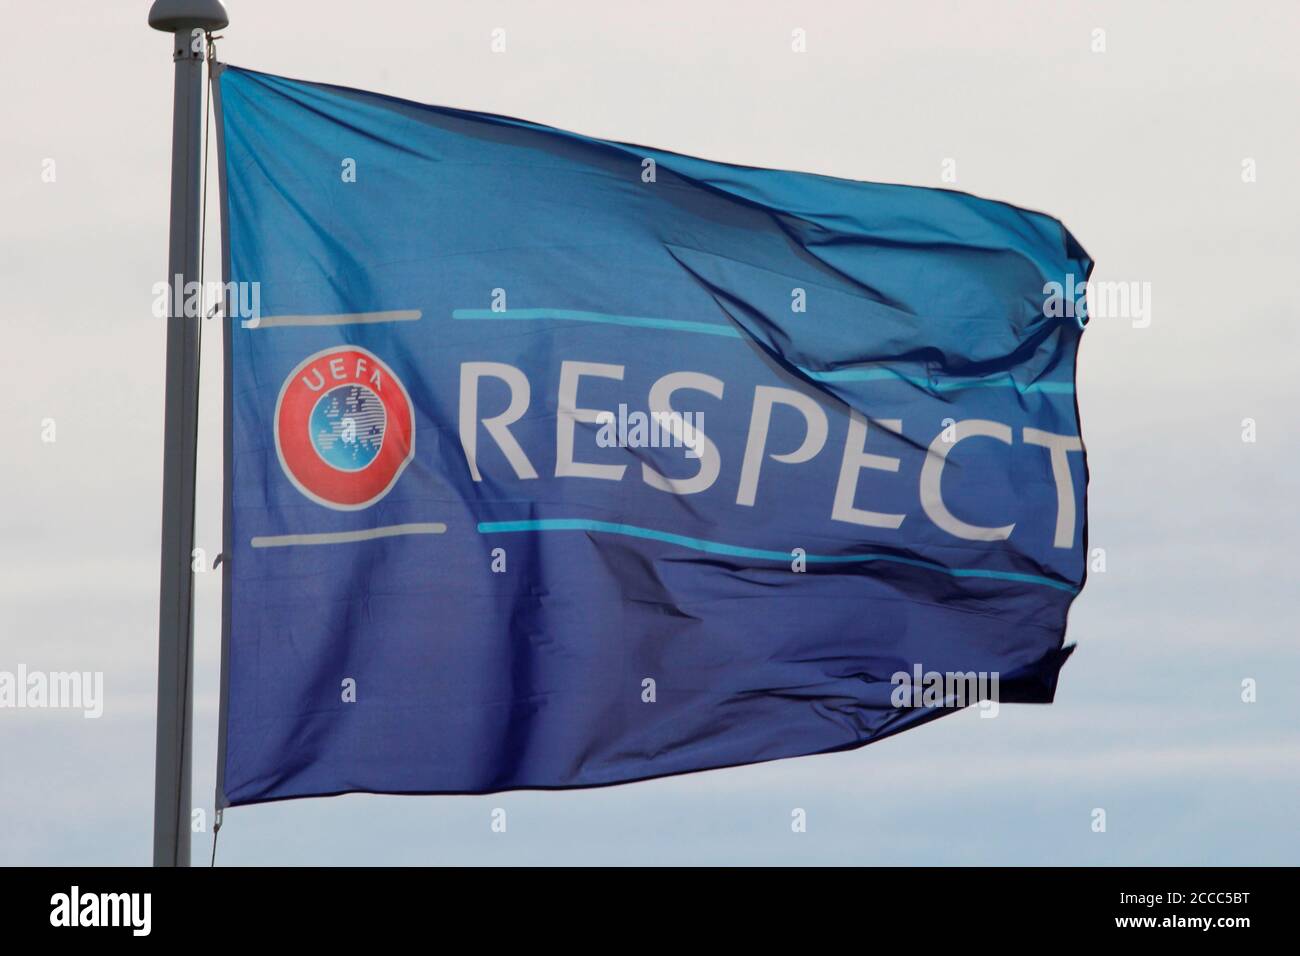 L'UEFA respecte la campagne contre le racisme et promeut le travail en faveur de l'unité et du respect à travers le genre, la race, la religion et la capacité photo de Tony Henshaw Banque D'Images